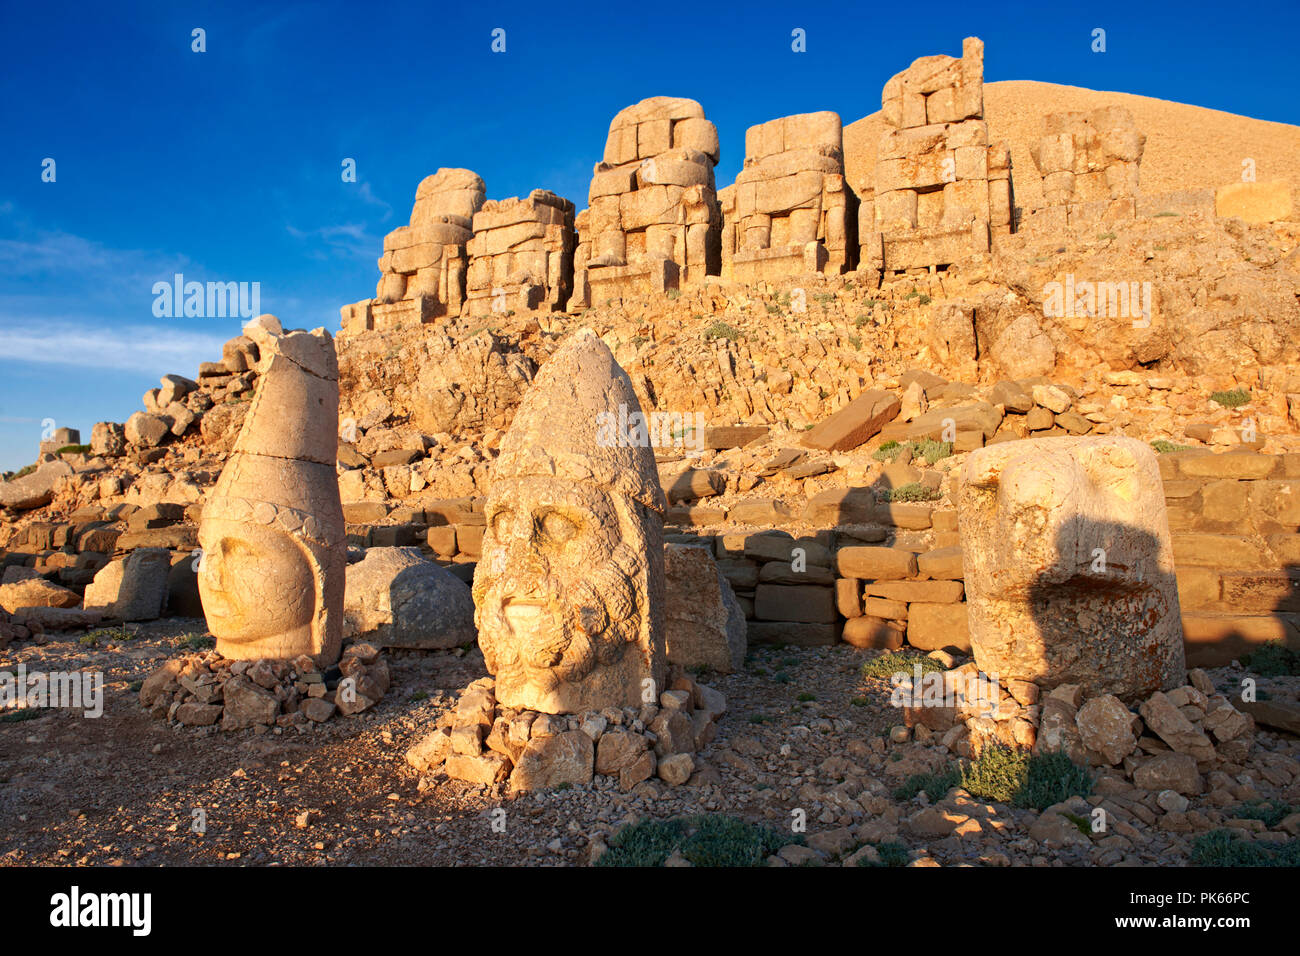 Bilder von den Statuen des Adlers, Herekles & Apollo rund um das Grab von Kommagene König Antochus 1 auf dem Gipfel des Berges Nemrut, Türkei. Stock Fotos & Stockfoto